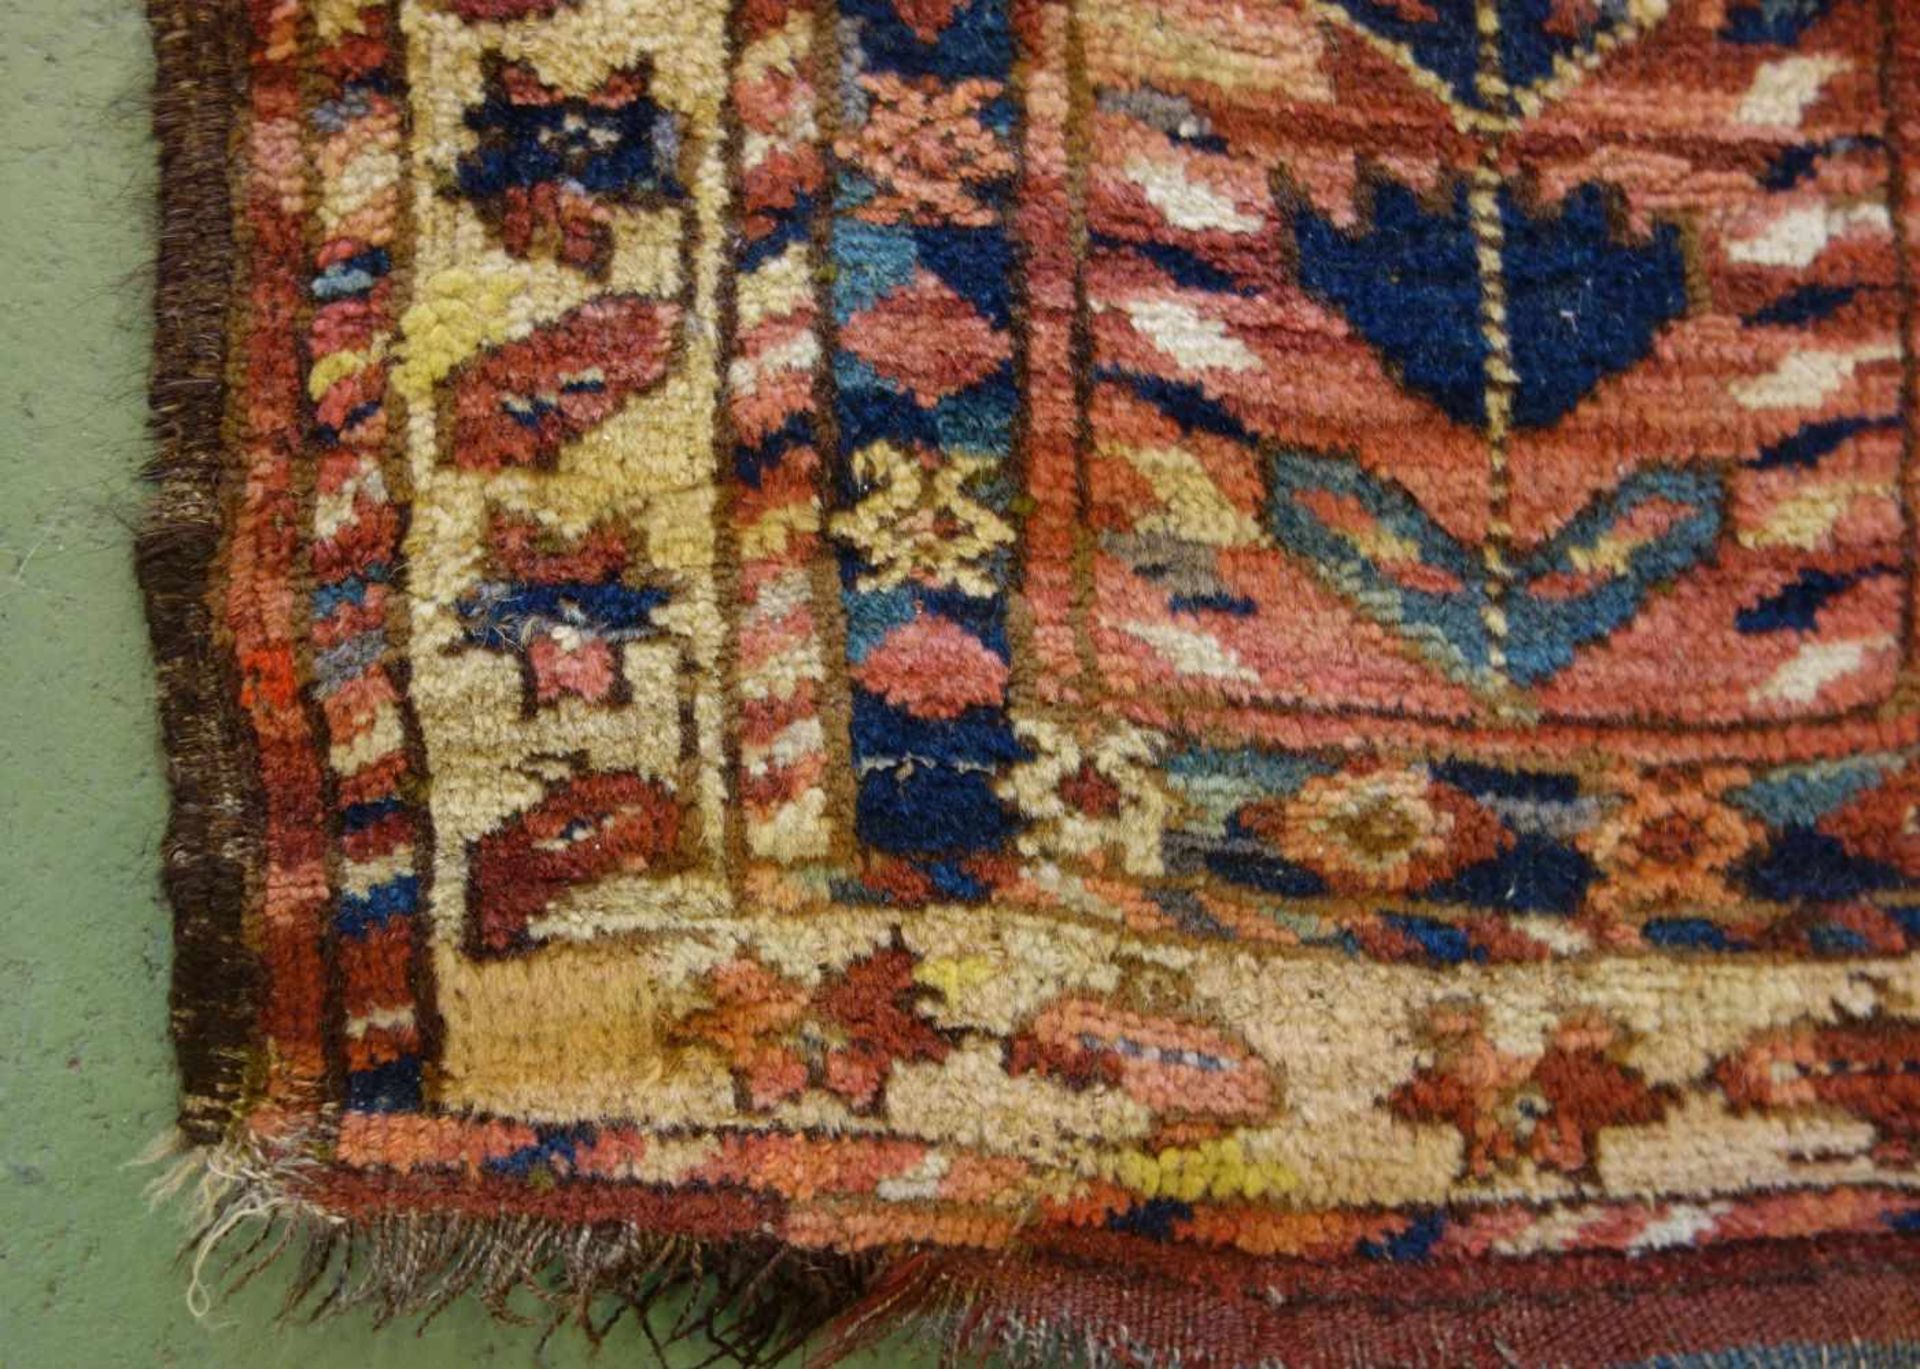 SCHMALER BESCHIR GEBETSTEPPICH / prayer rug, wohl 2. H. 19. Jh., Turkmenistan / Ersari-Beschir ( - Image 13 of 24